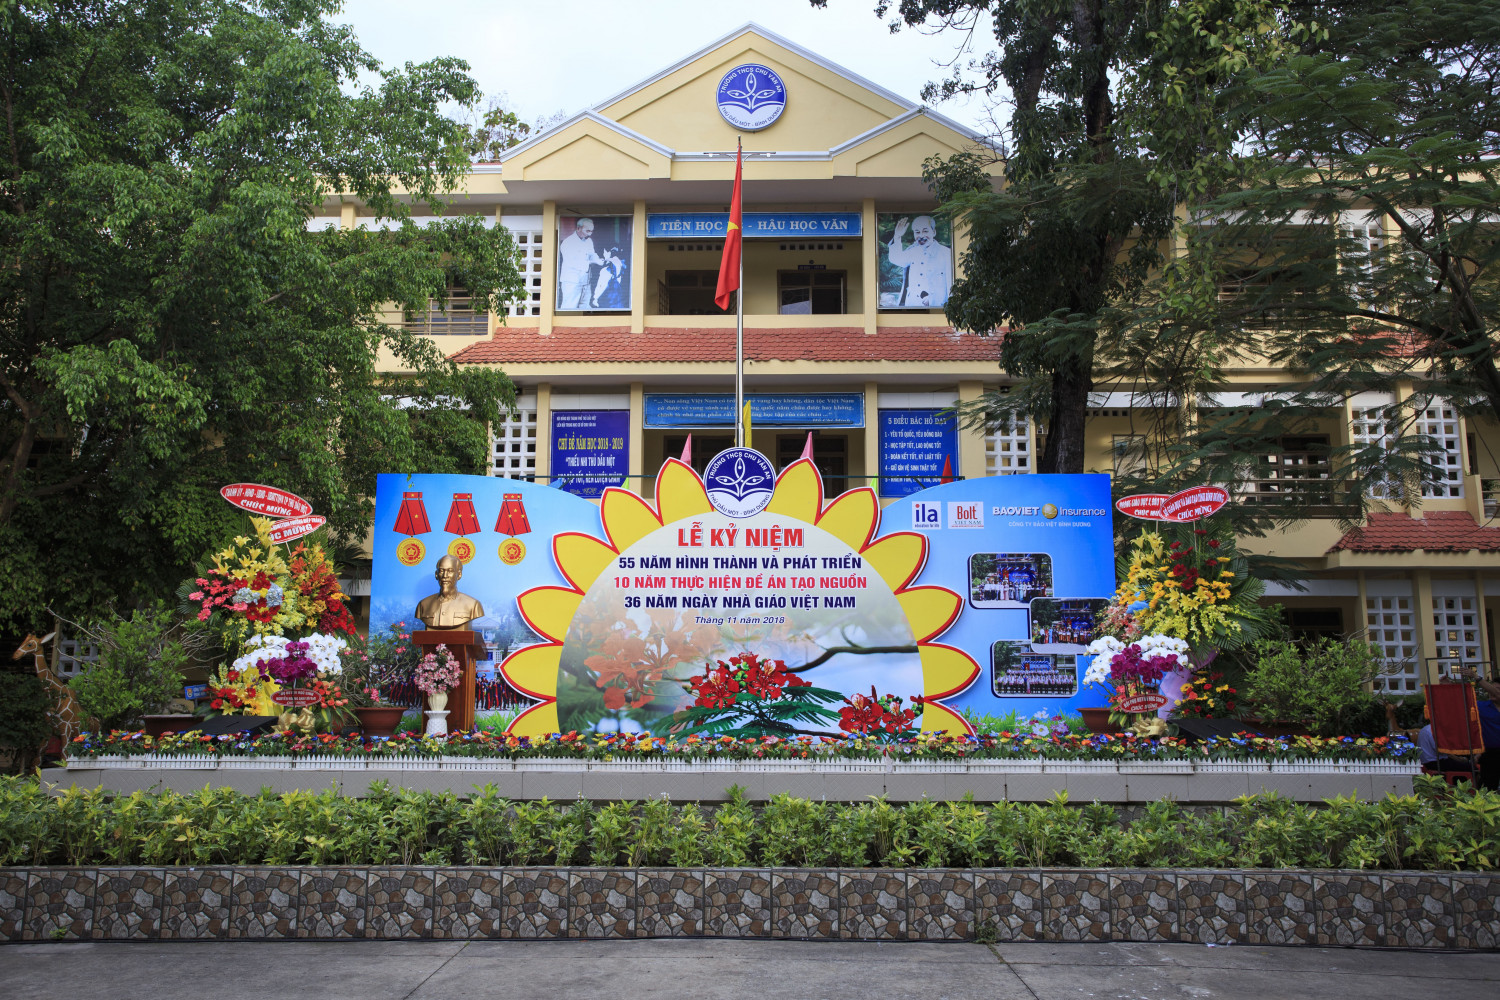 Lễ kỷ niệm 55 năm hình thành và phát triển - 10 năm thực hiện đề án Tạo nguồn - 36 năm Ngày Nhà giáo Việt Nam